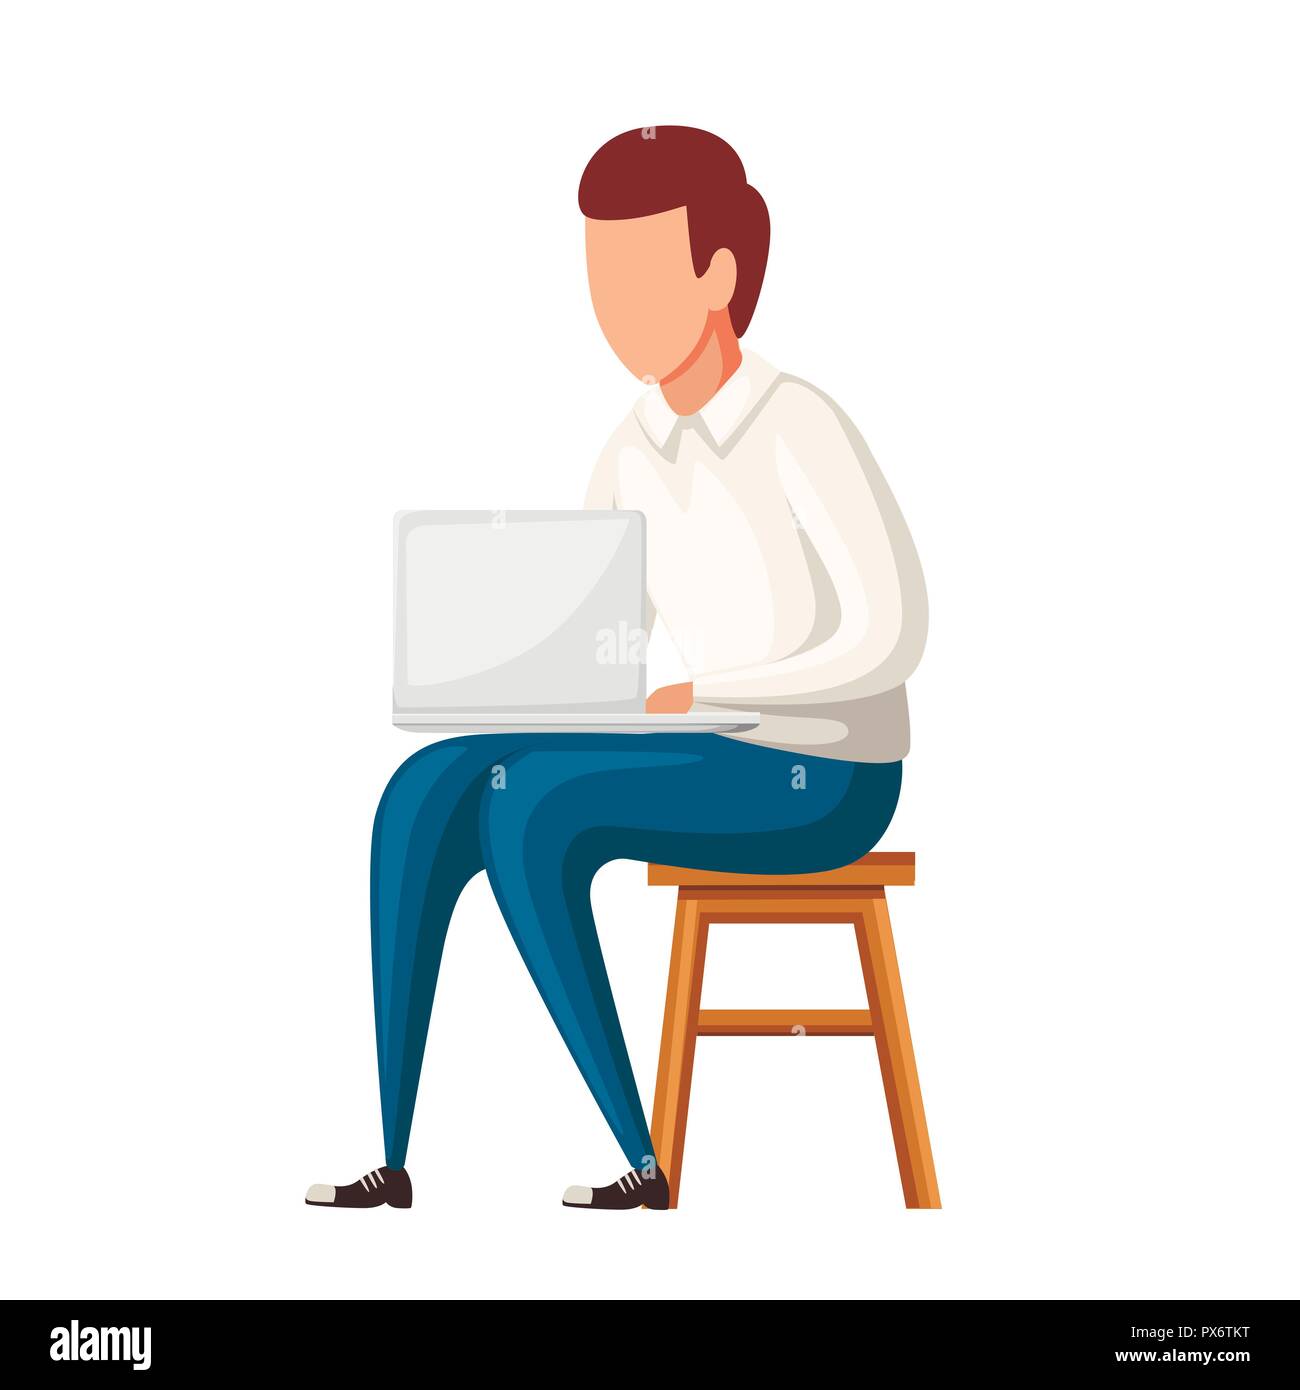 Mann auf Stuhl mit Laptop sitzen. Kein Gesicht Charakter Design. Flache Vector Illustration auf weißem Hintergrund. Stock Vektor